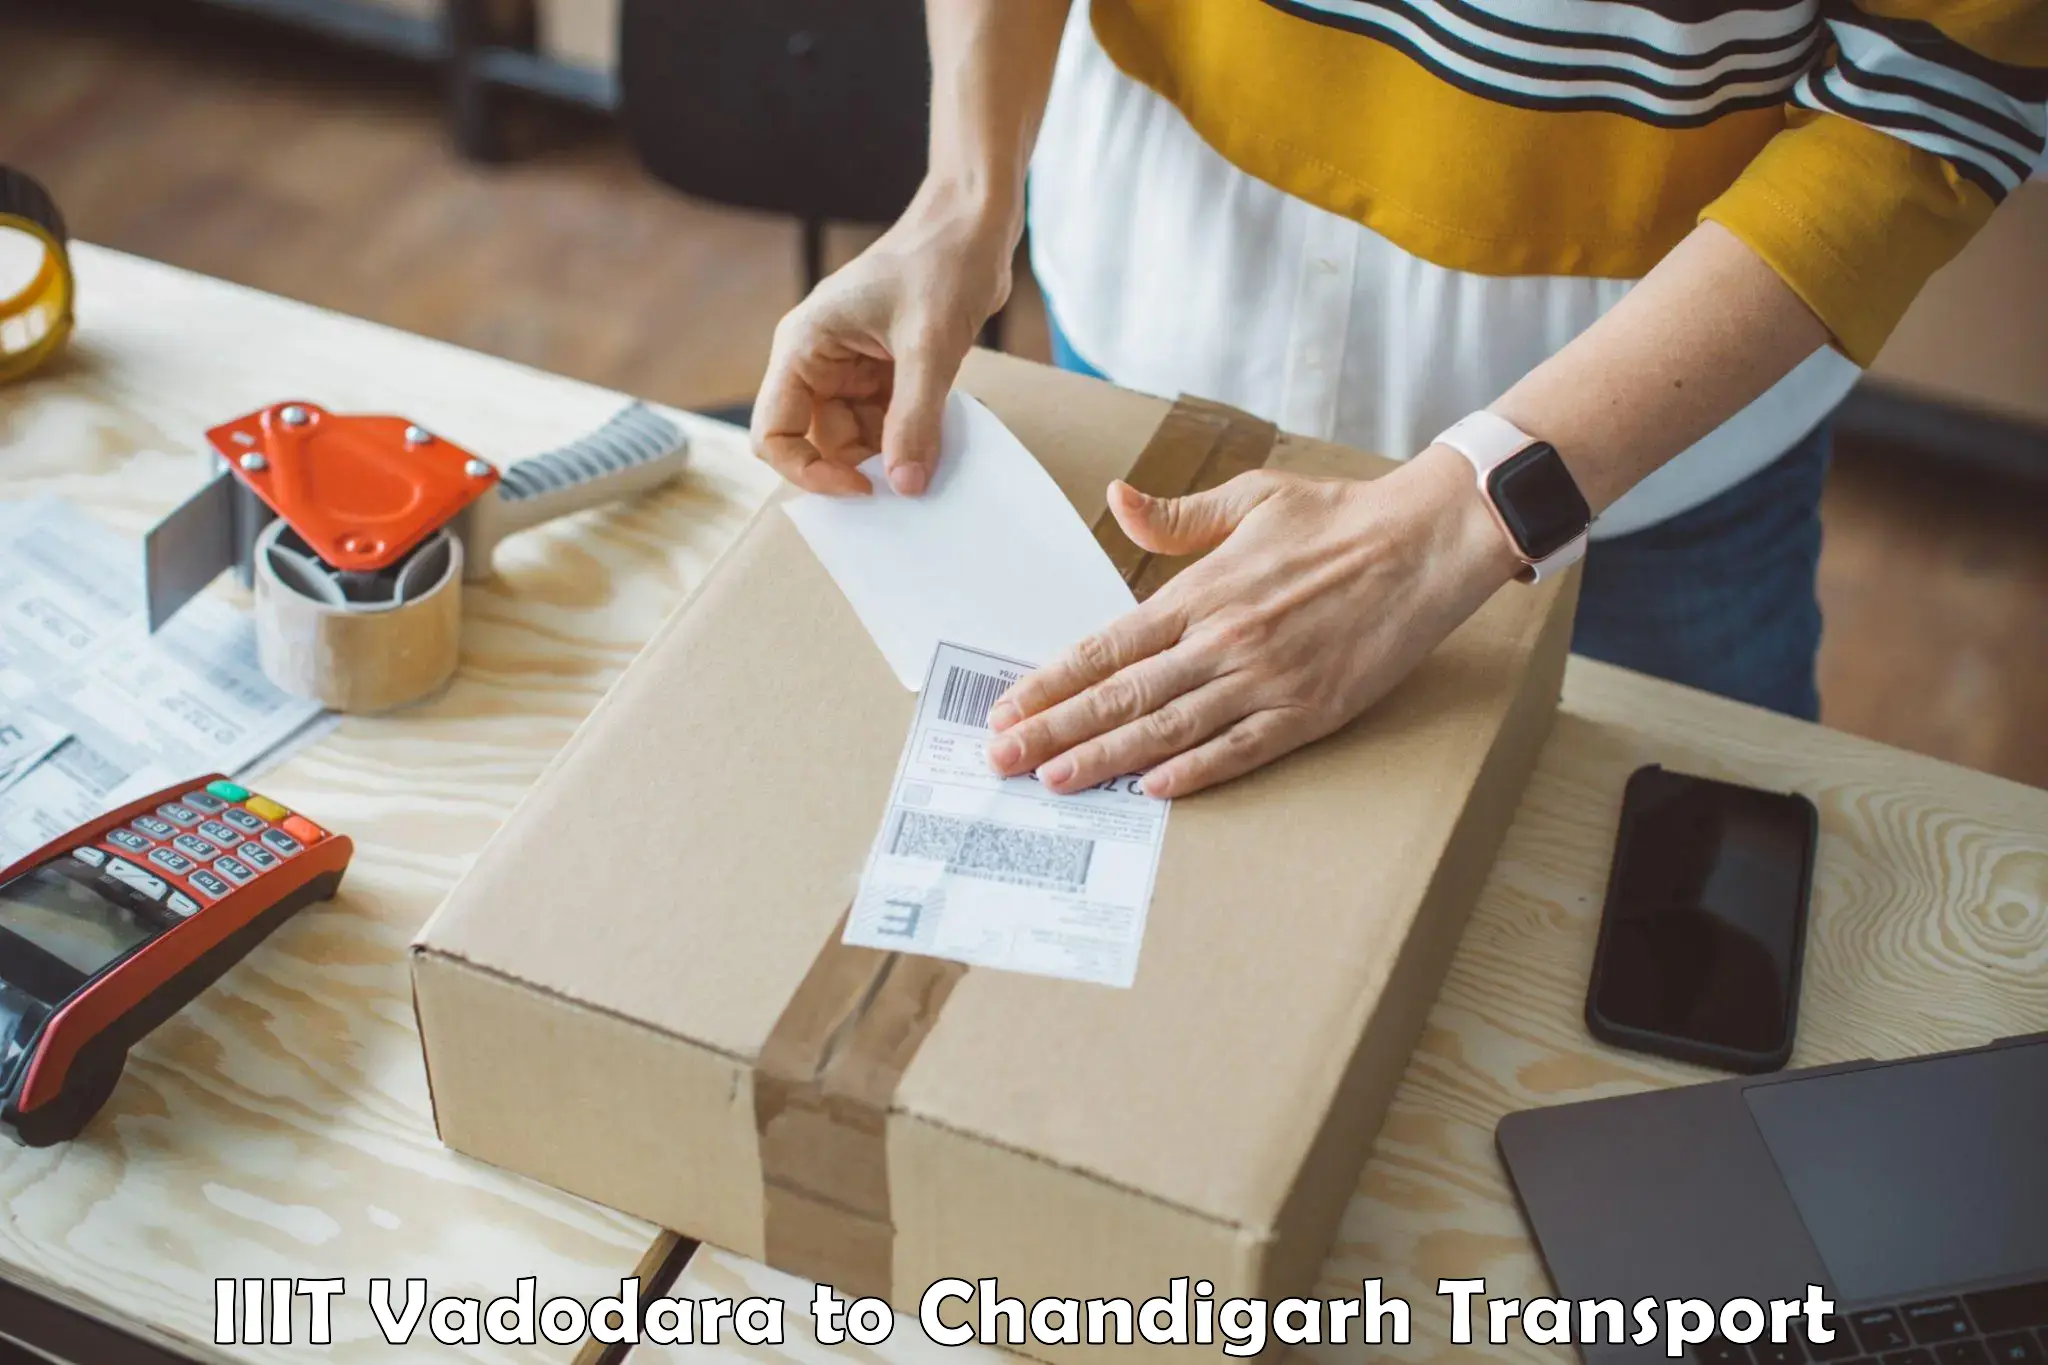 Cargo transport services IIIT Vadodara to Chandigarh